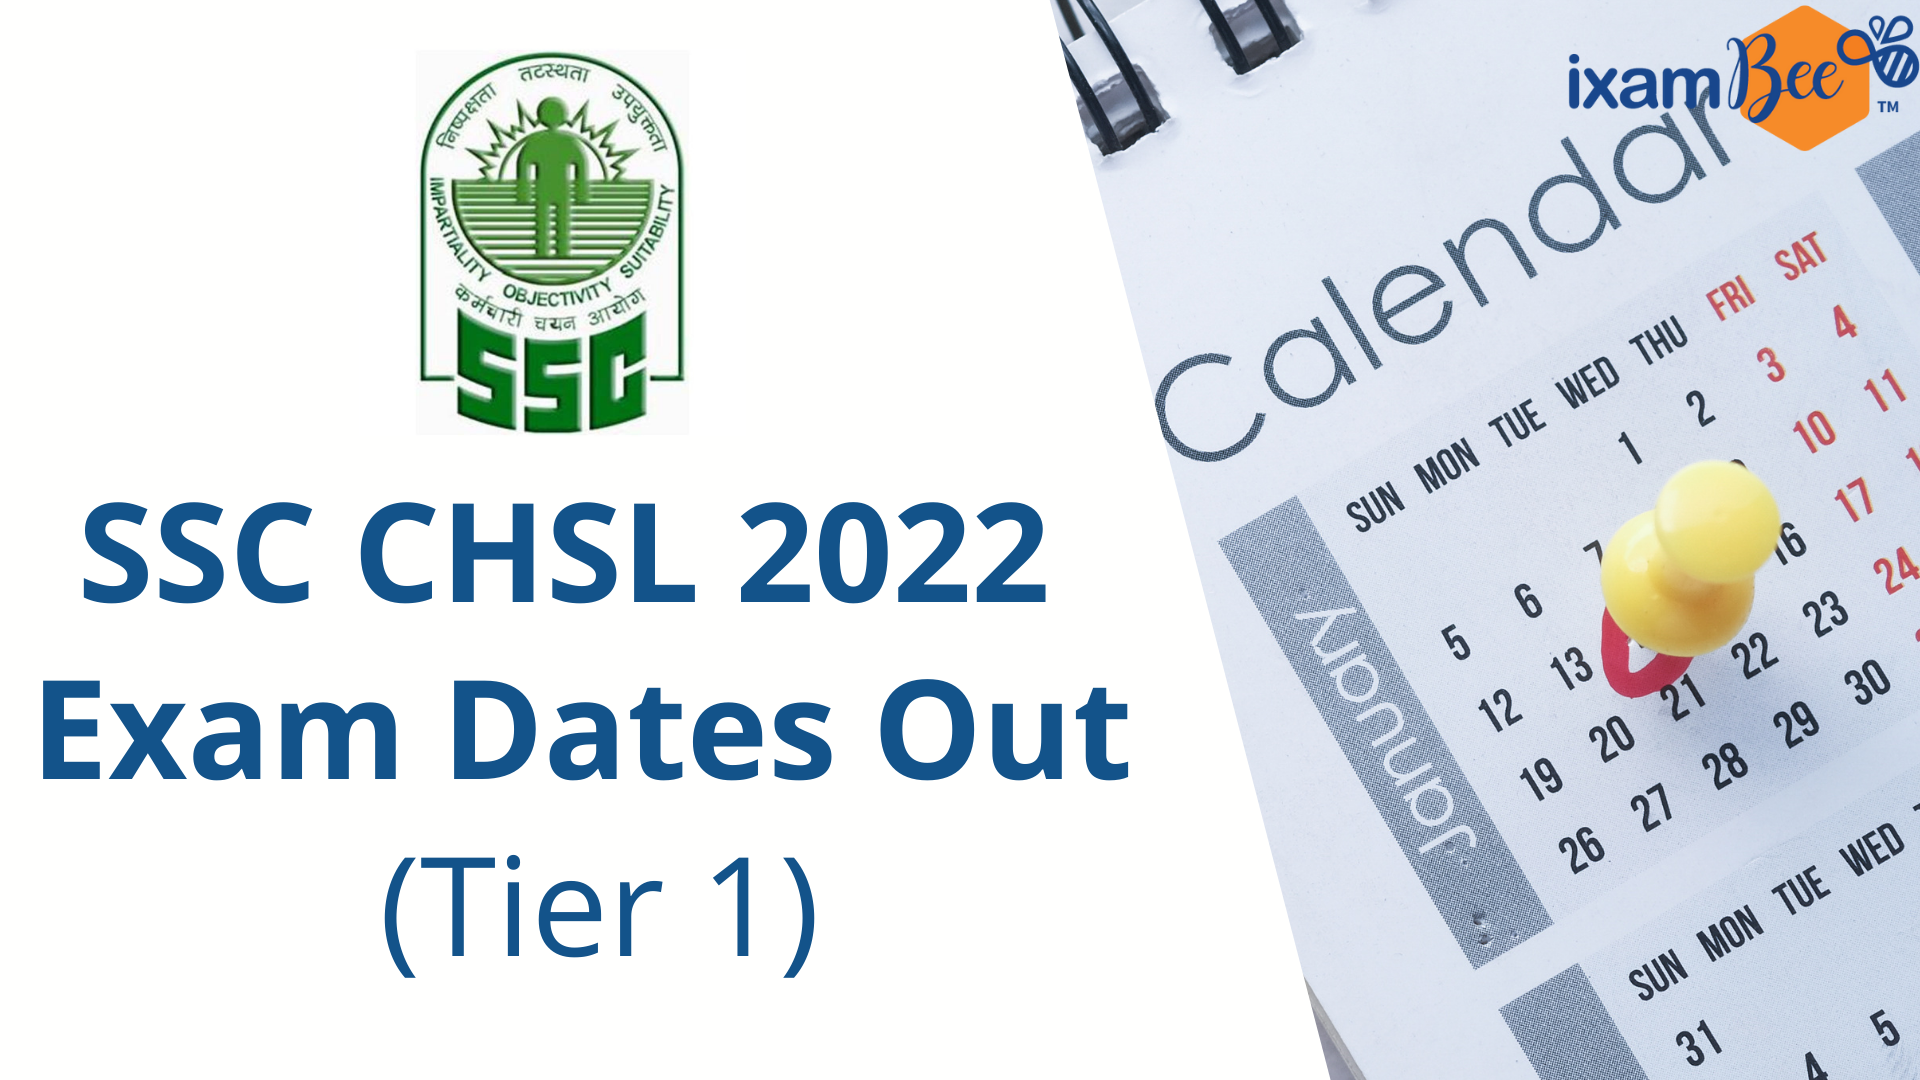 SSC CHSL 2022 Exam Dates Out (Tier-1)